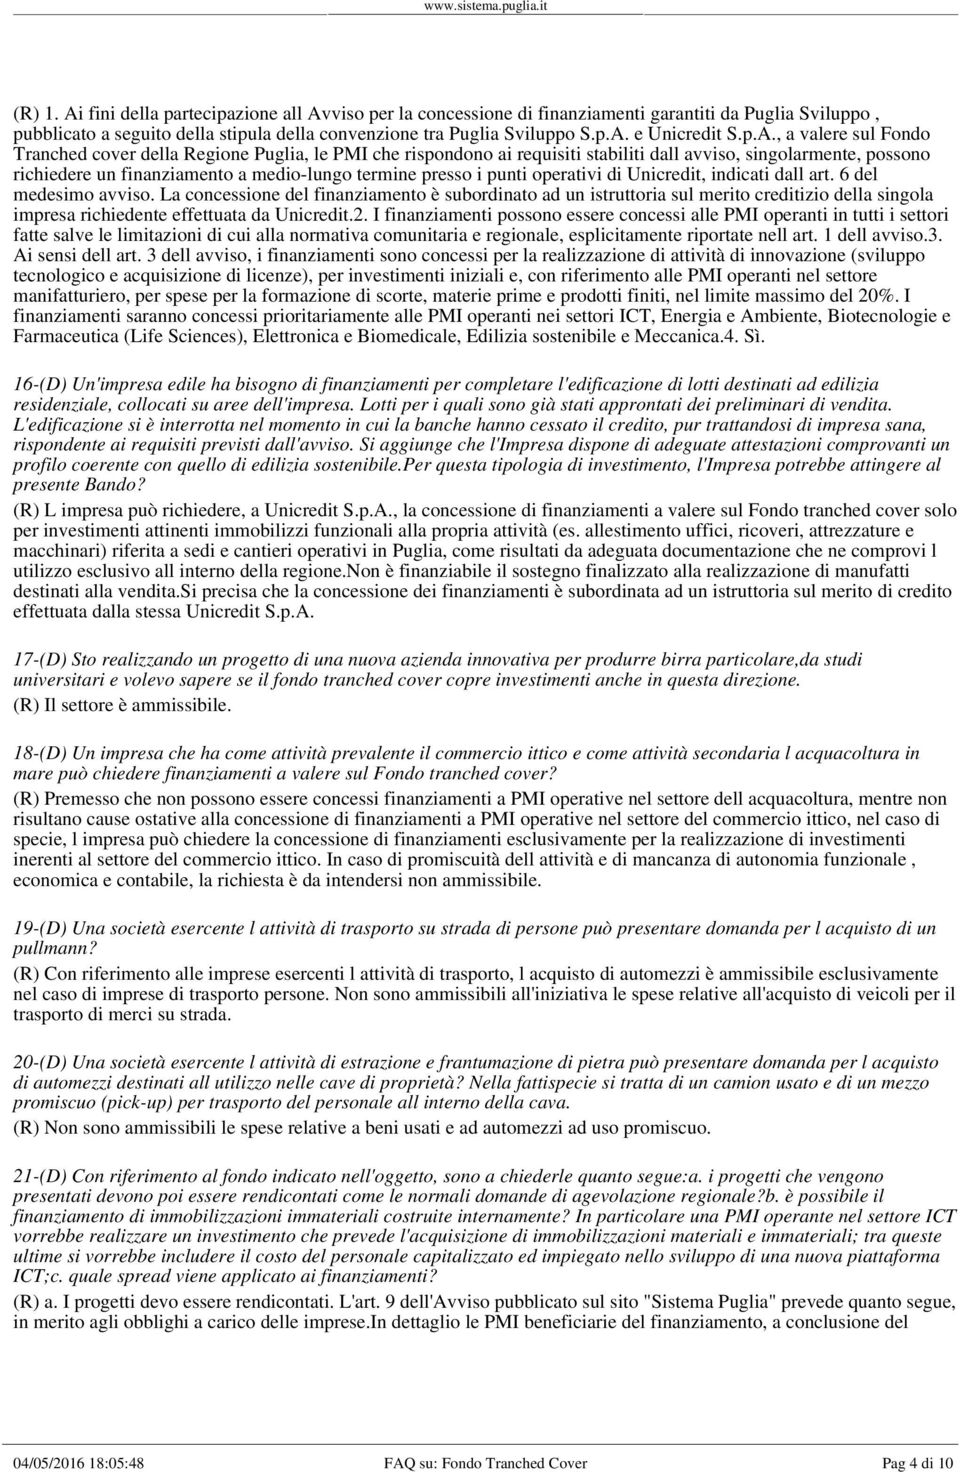 i punti operativi di Unicredit, indicati dall art. 6 del medesimo avviso.